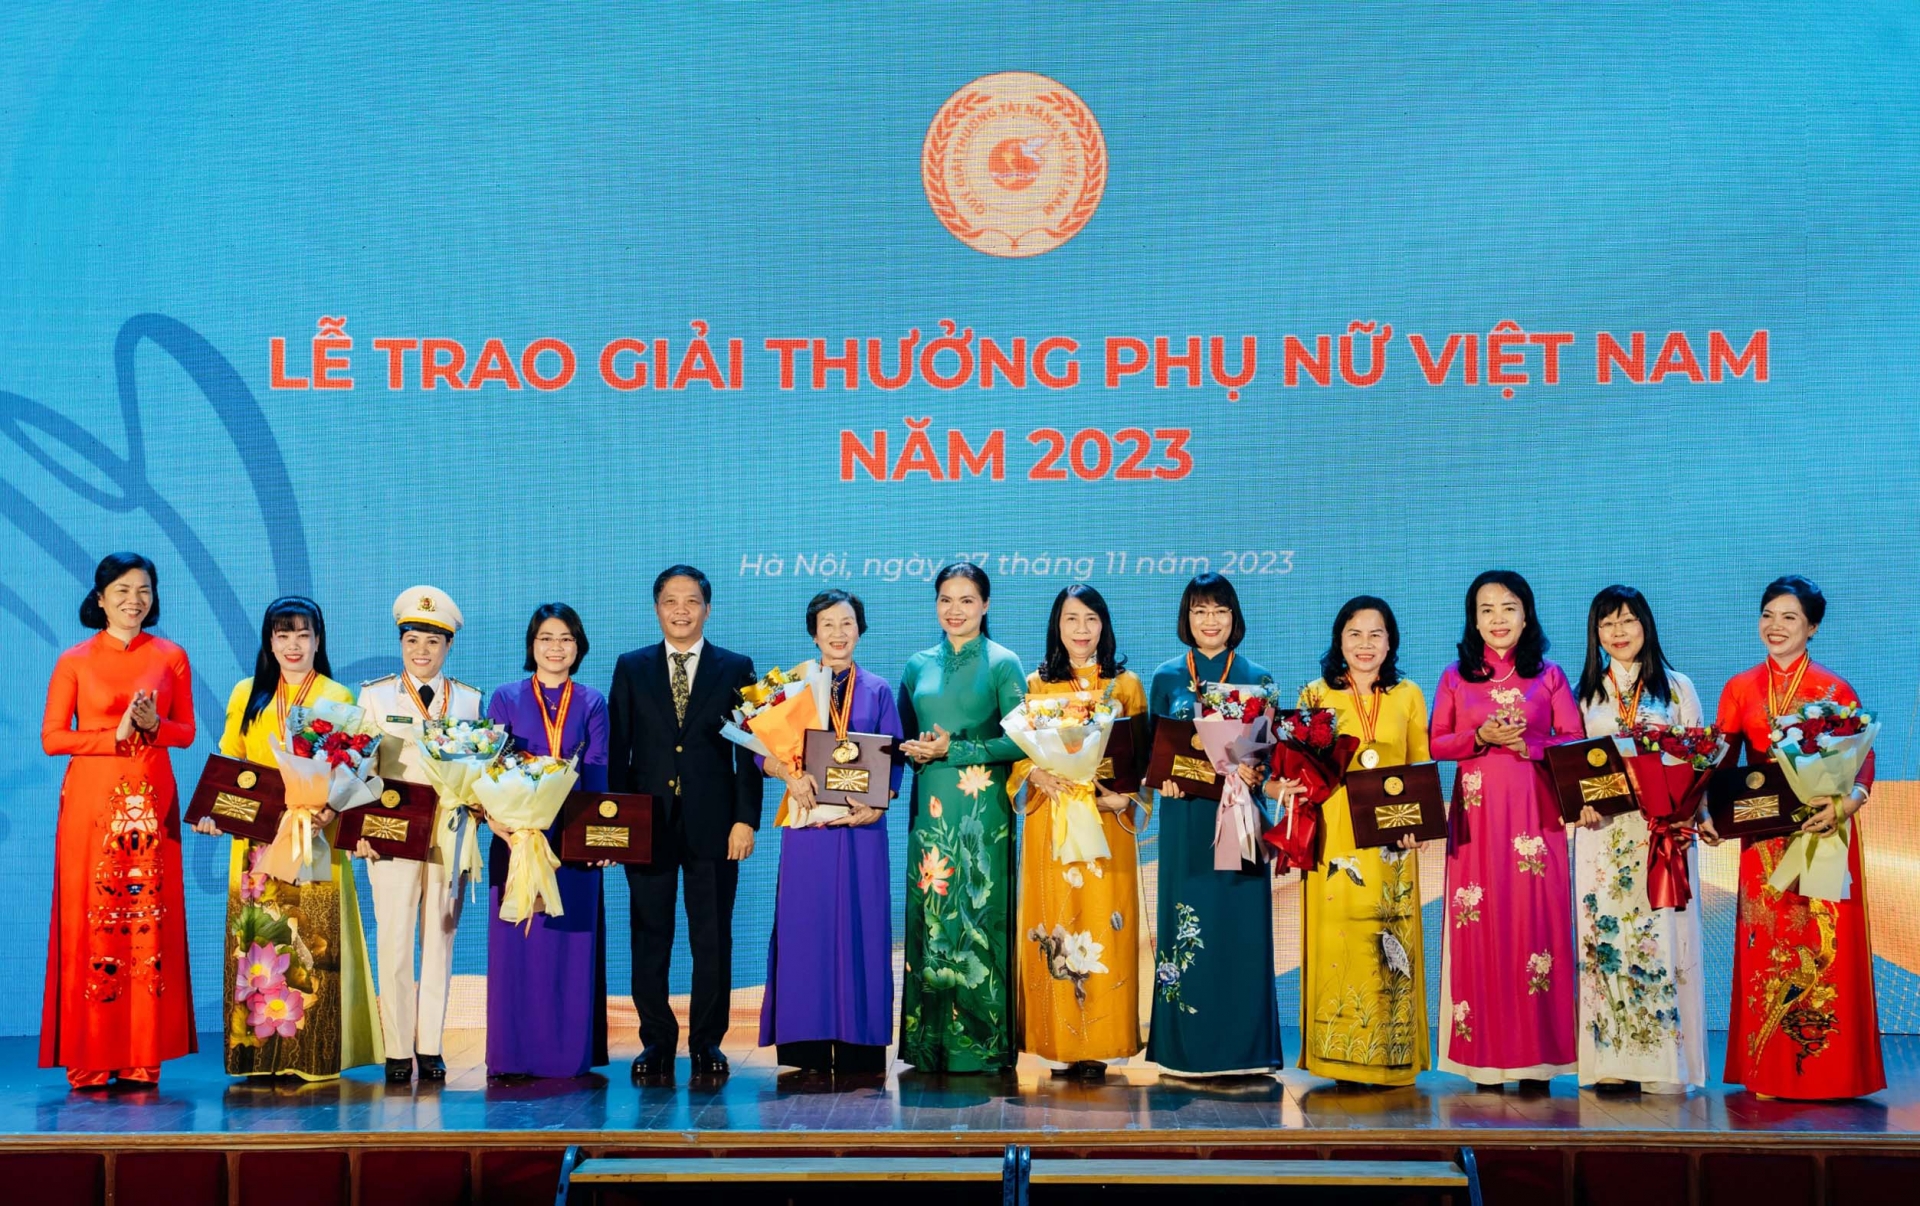 Giám đốc Công ty TNHH Quảng Thái nhận Giải thưởng Phụ nữ Việt Nam năm 2023